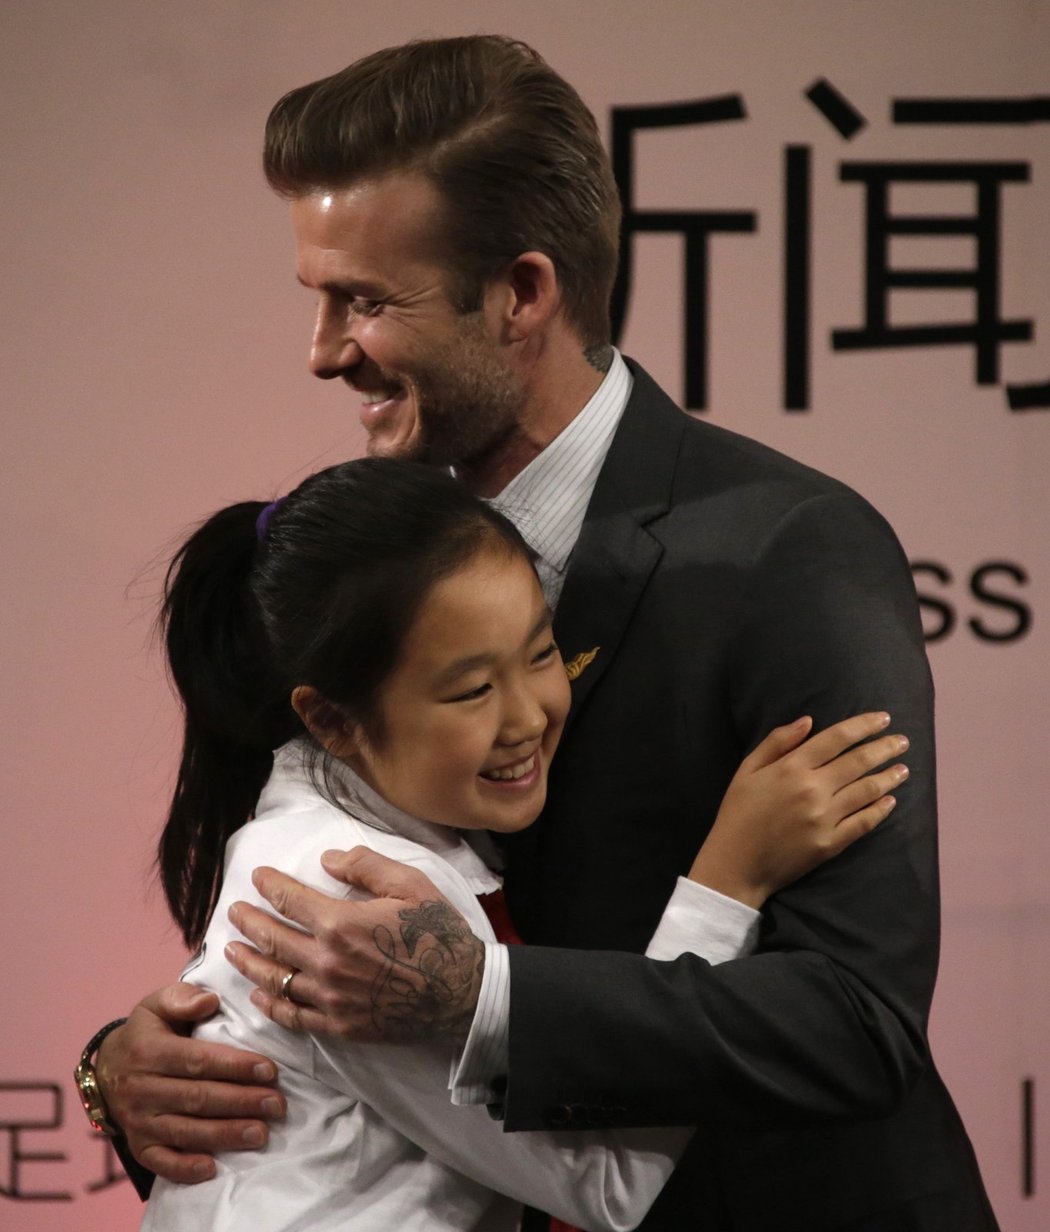 Při návštěvě v Číně se David Beckham setkal s projevy náklonnosti od svých fanoušků. V nejlidnatější zemi světa chce anglický záložník přivést co nejvíce dětí k fotbalu.